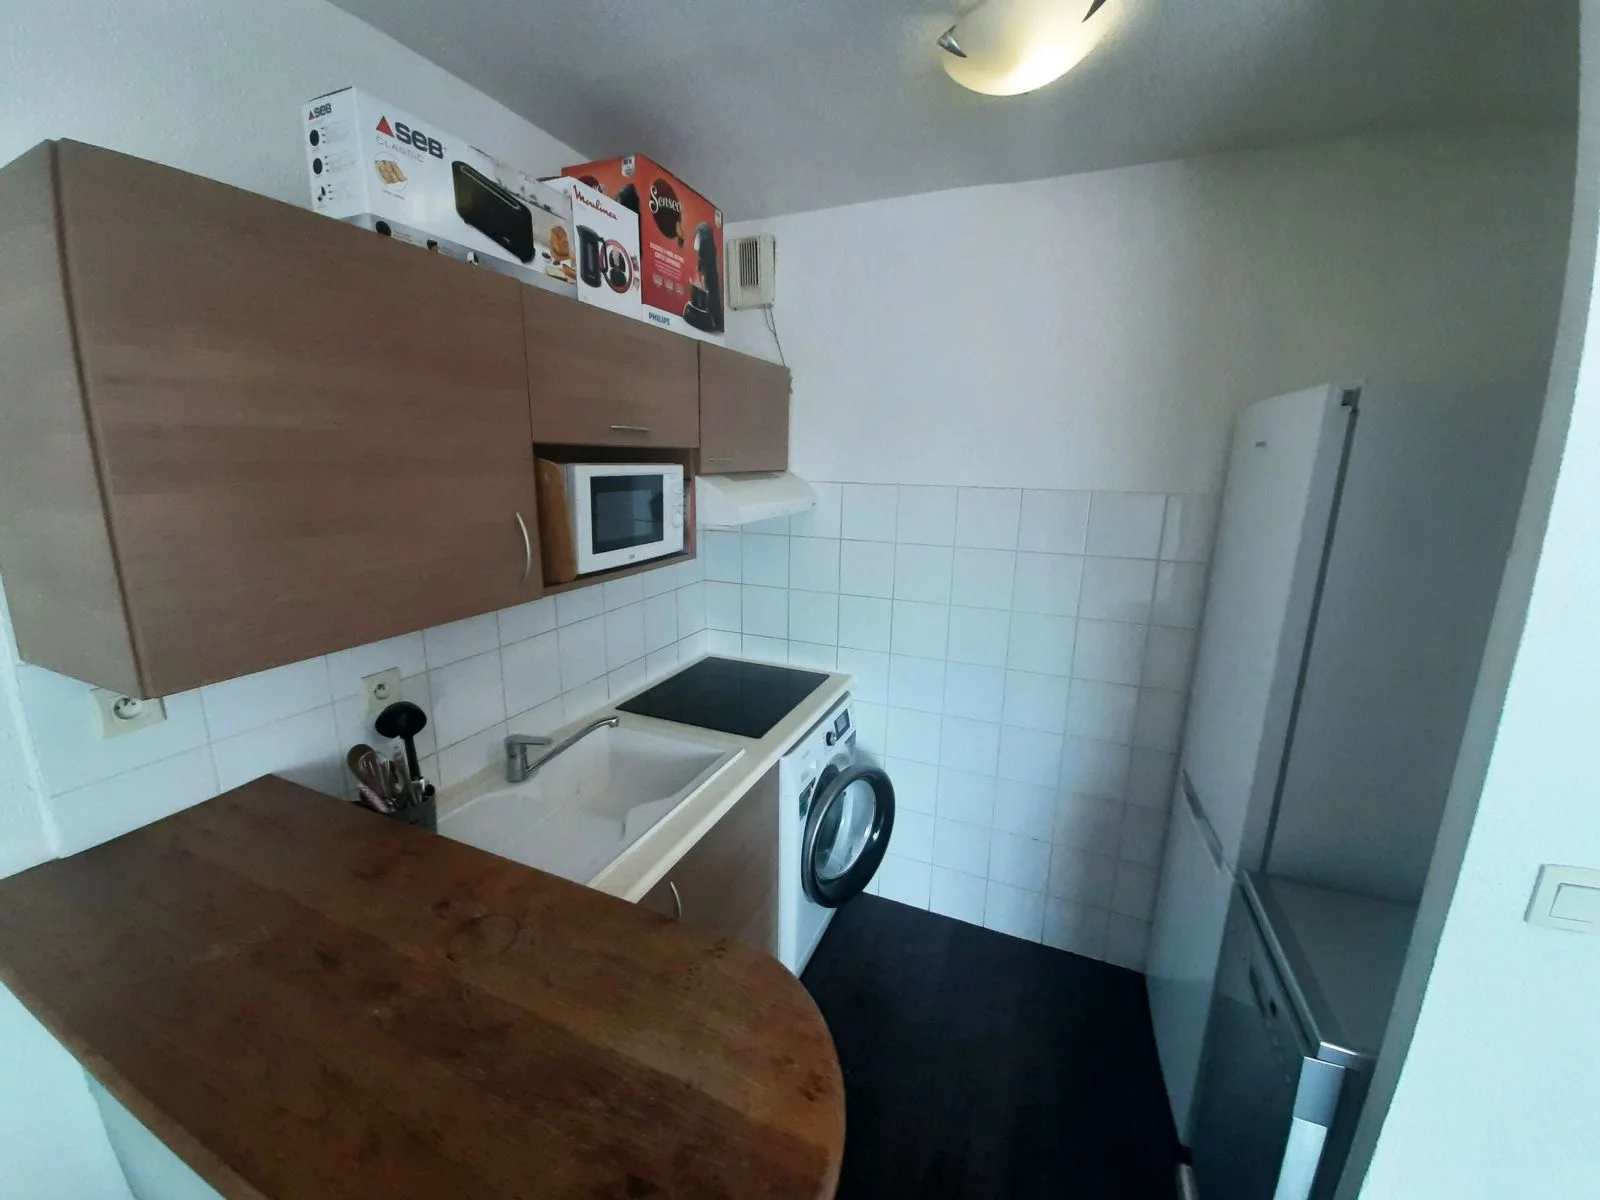 Location appartement meublé 2 pièces 35m² (Paris est - Bry sur Marne)